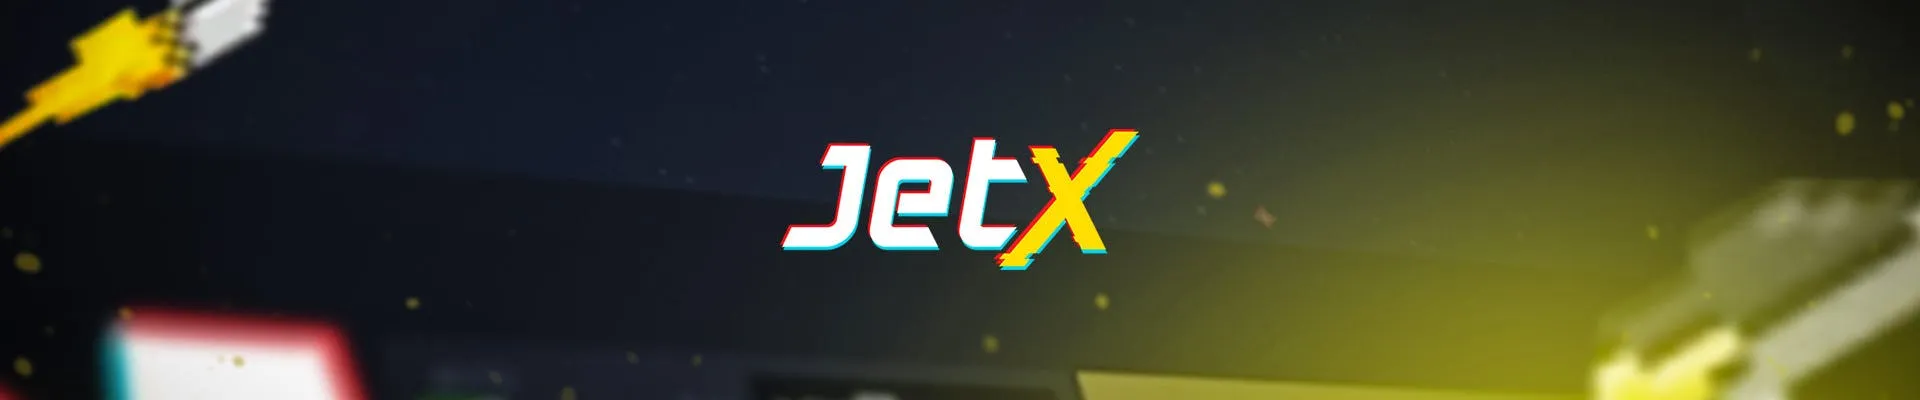 Revue de la machine à sous Jet X Jouer gratuitement en ligne en mode démo